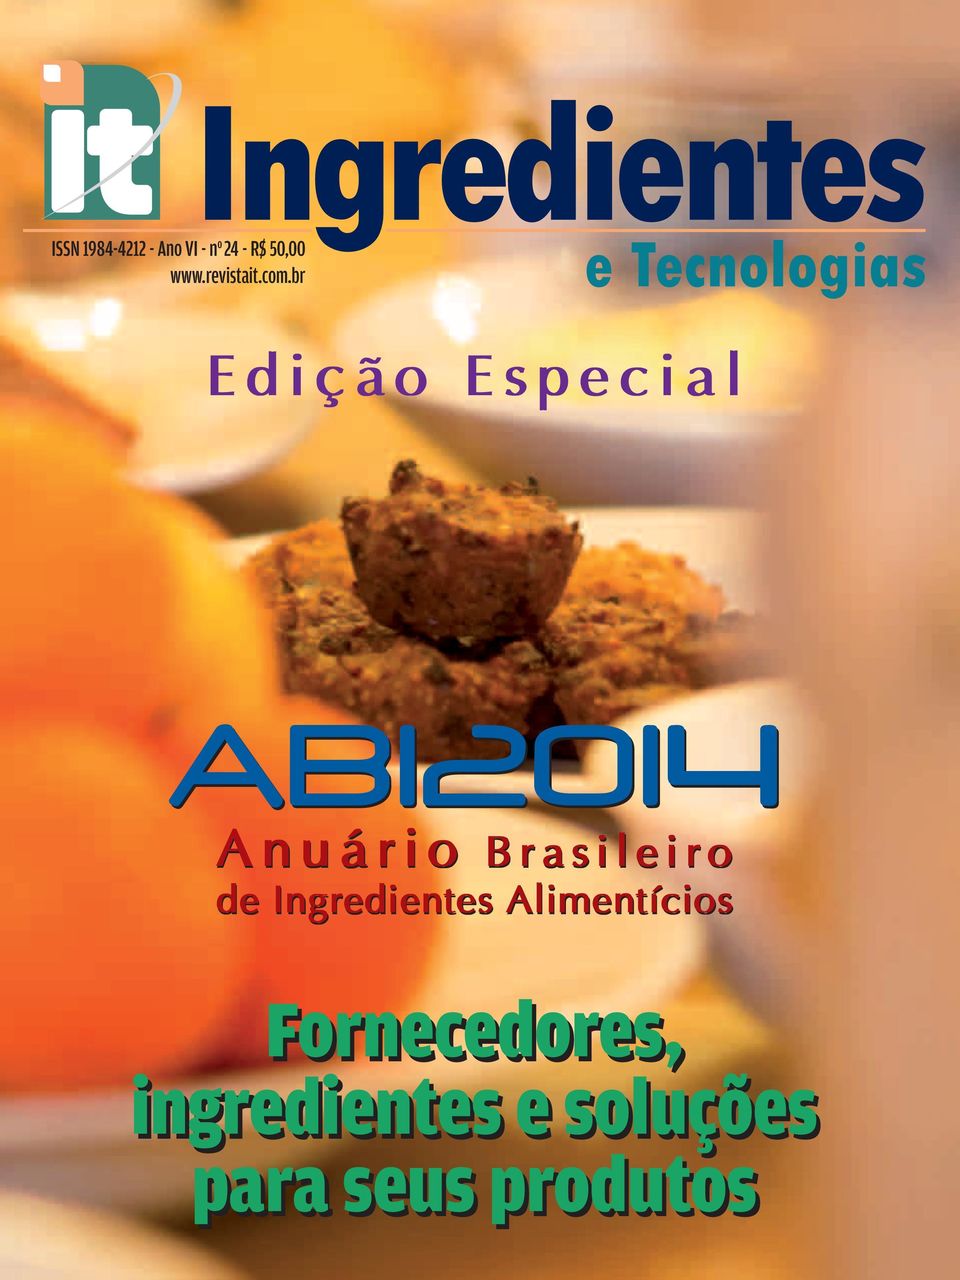 br Edição Especial ABI2014 Anuário Brasileiro de